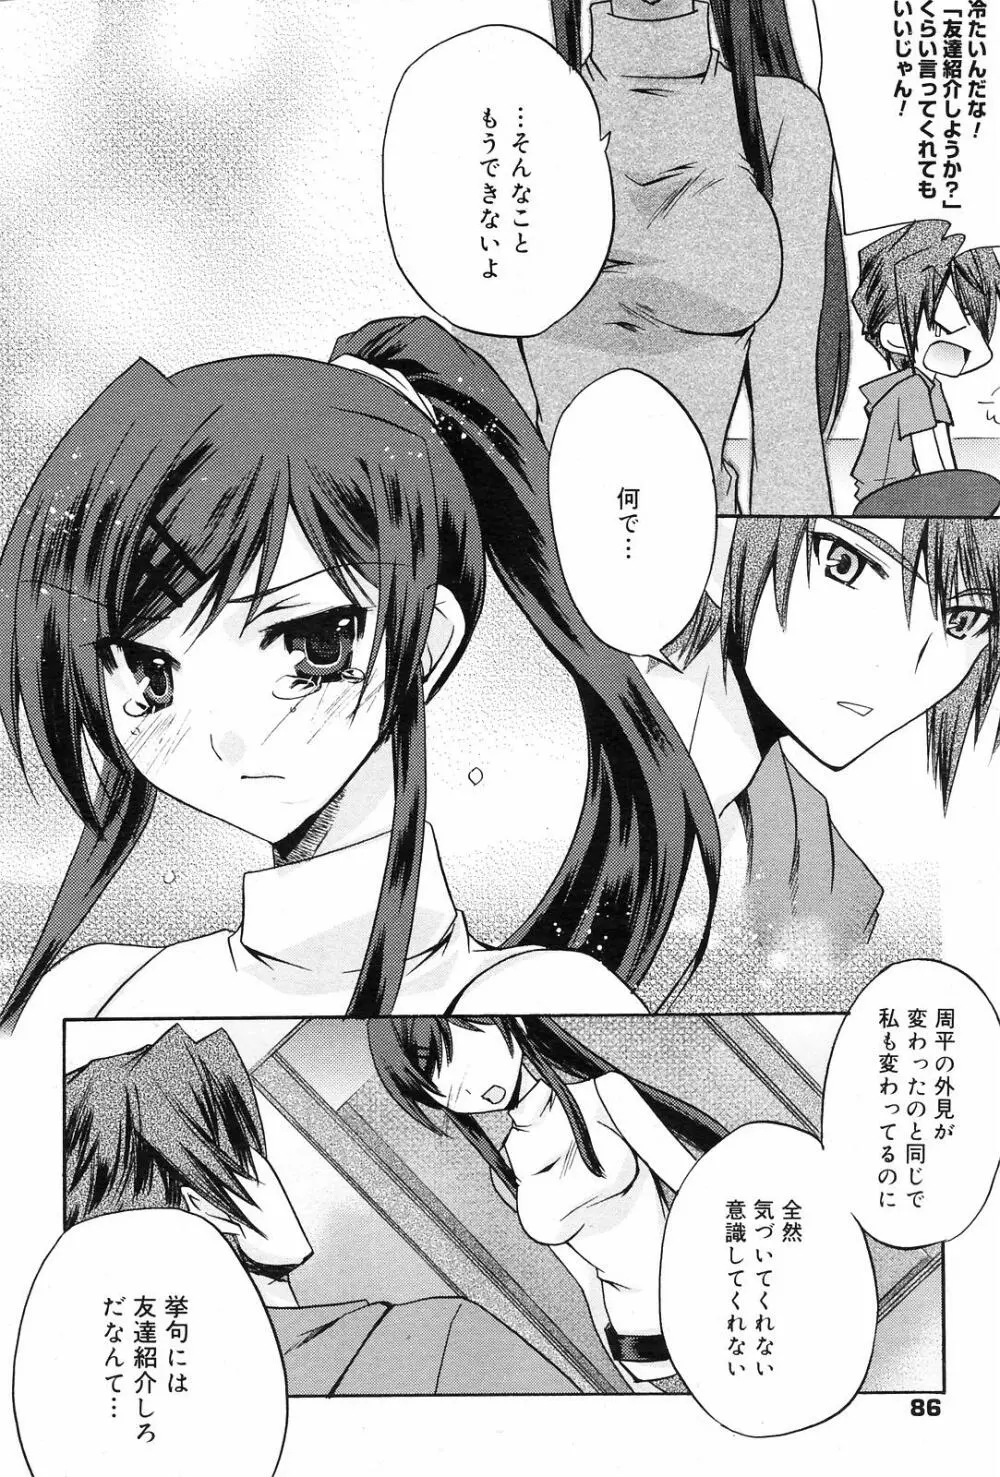 Manga Bangaichi 2008-09 86ページ